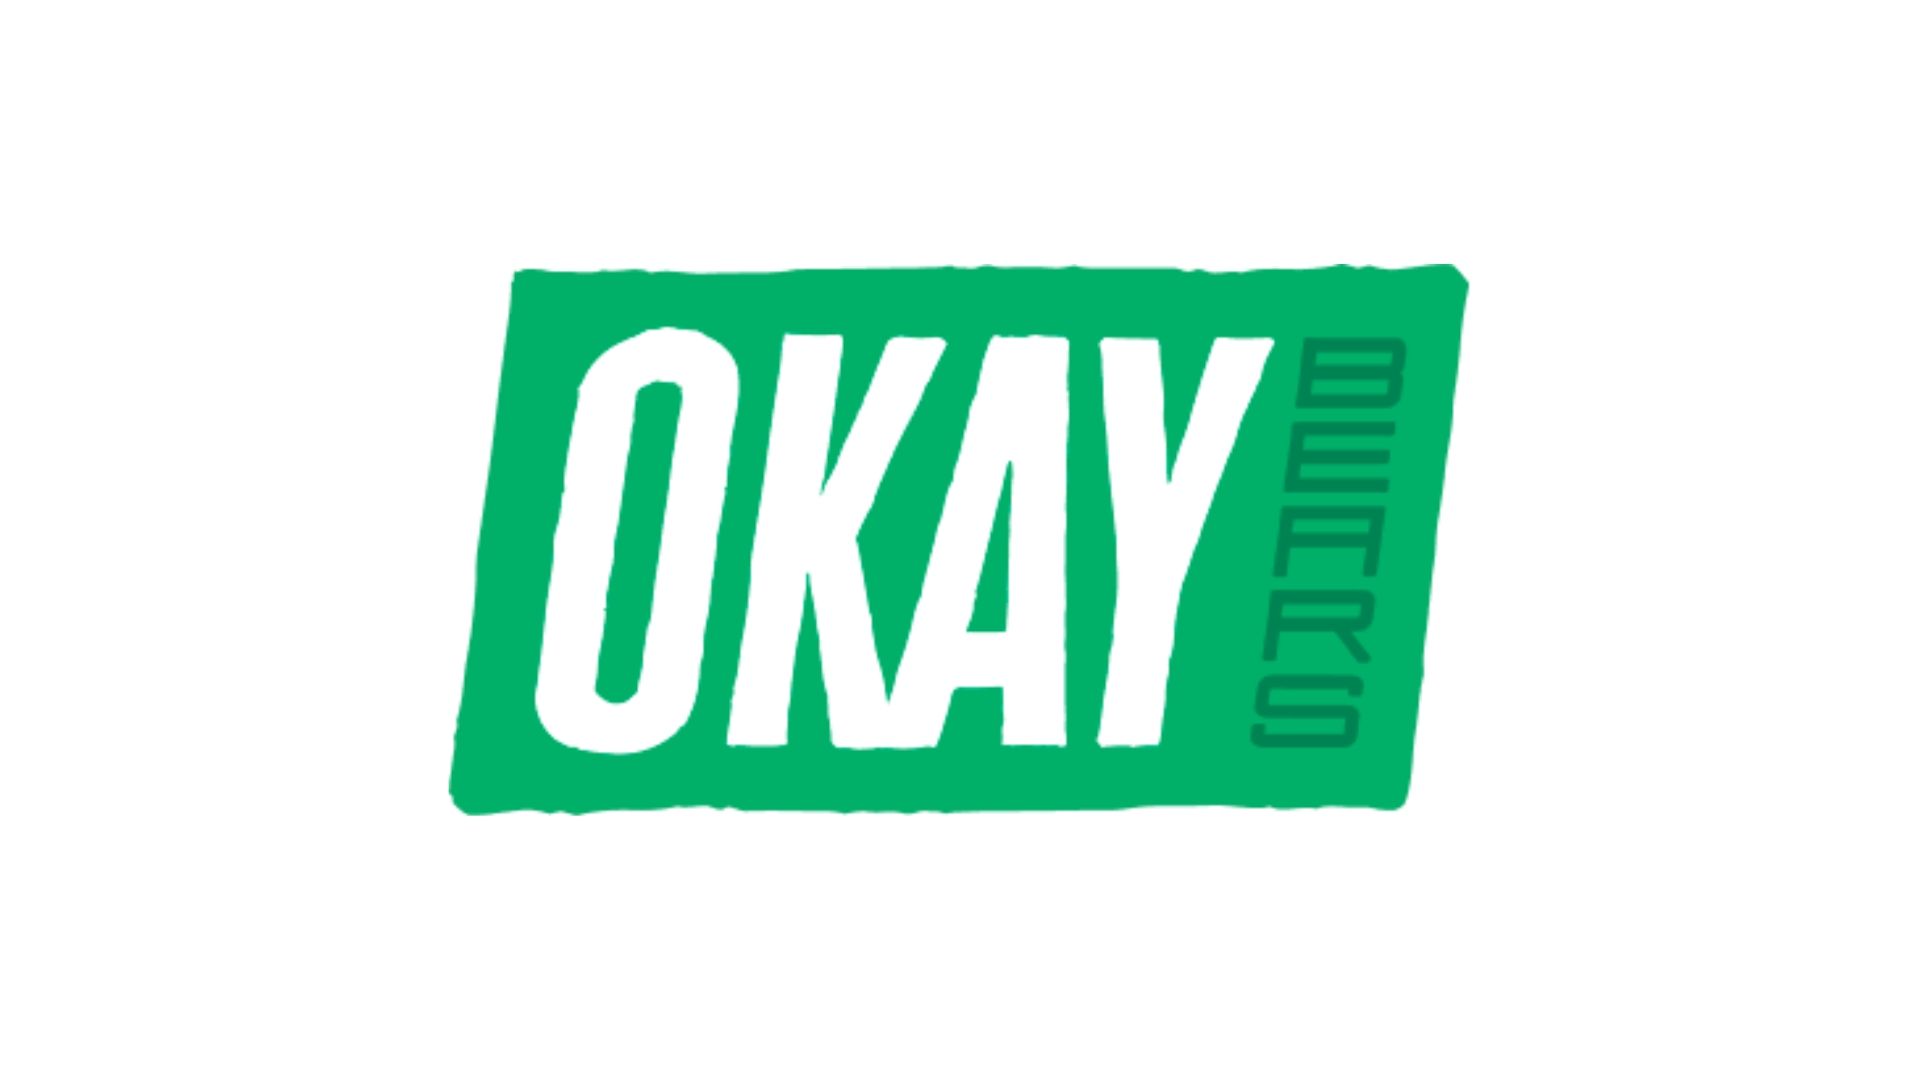 The Okay Bears logo